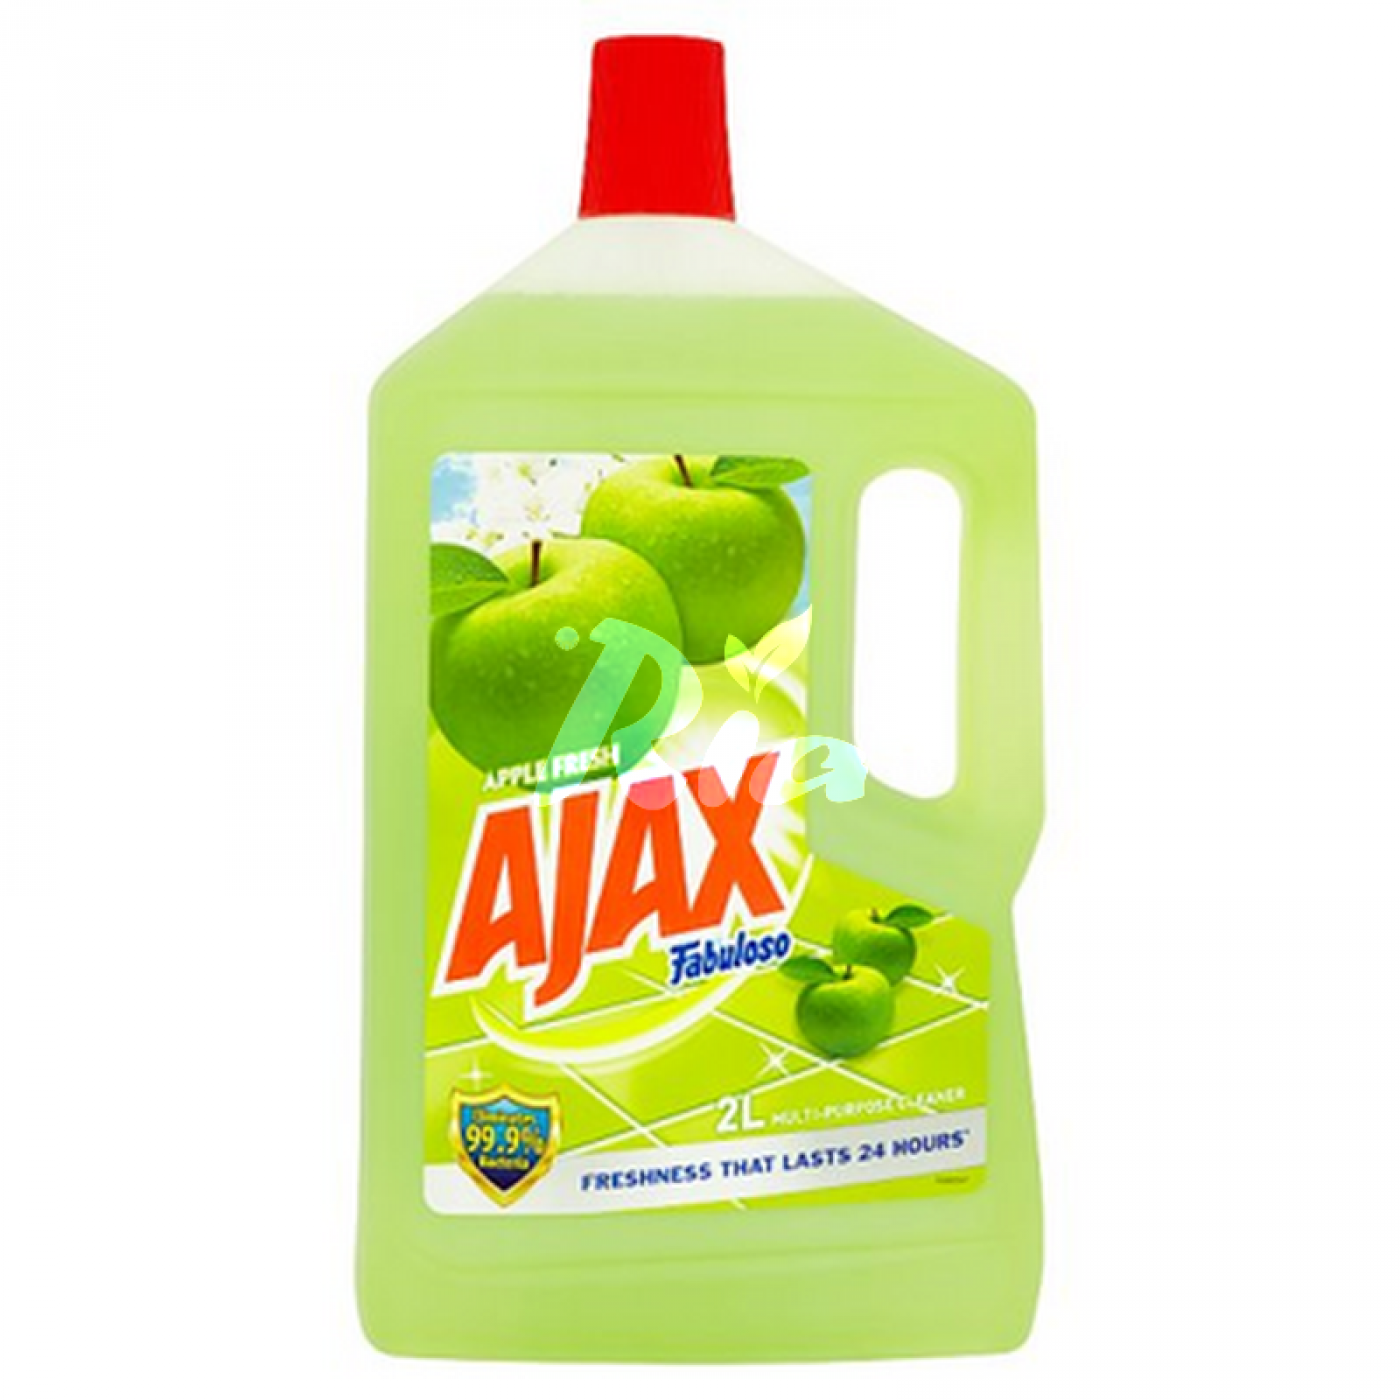 AJAX 2L-EPAL